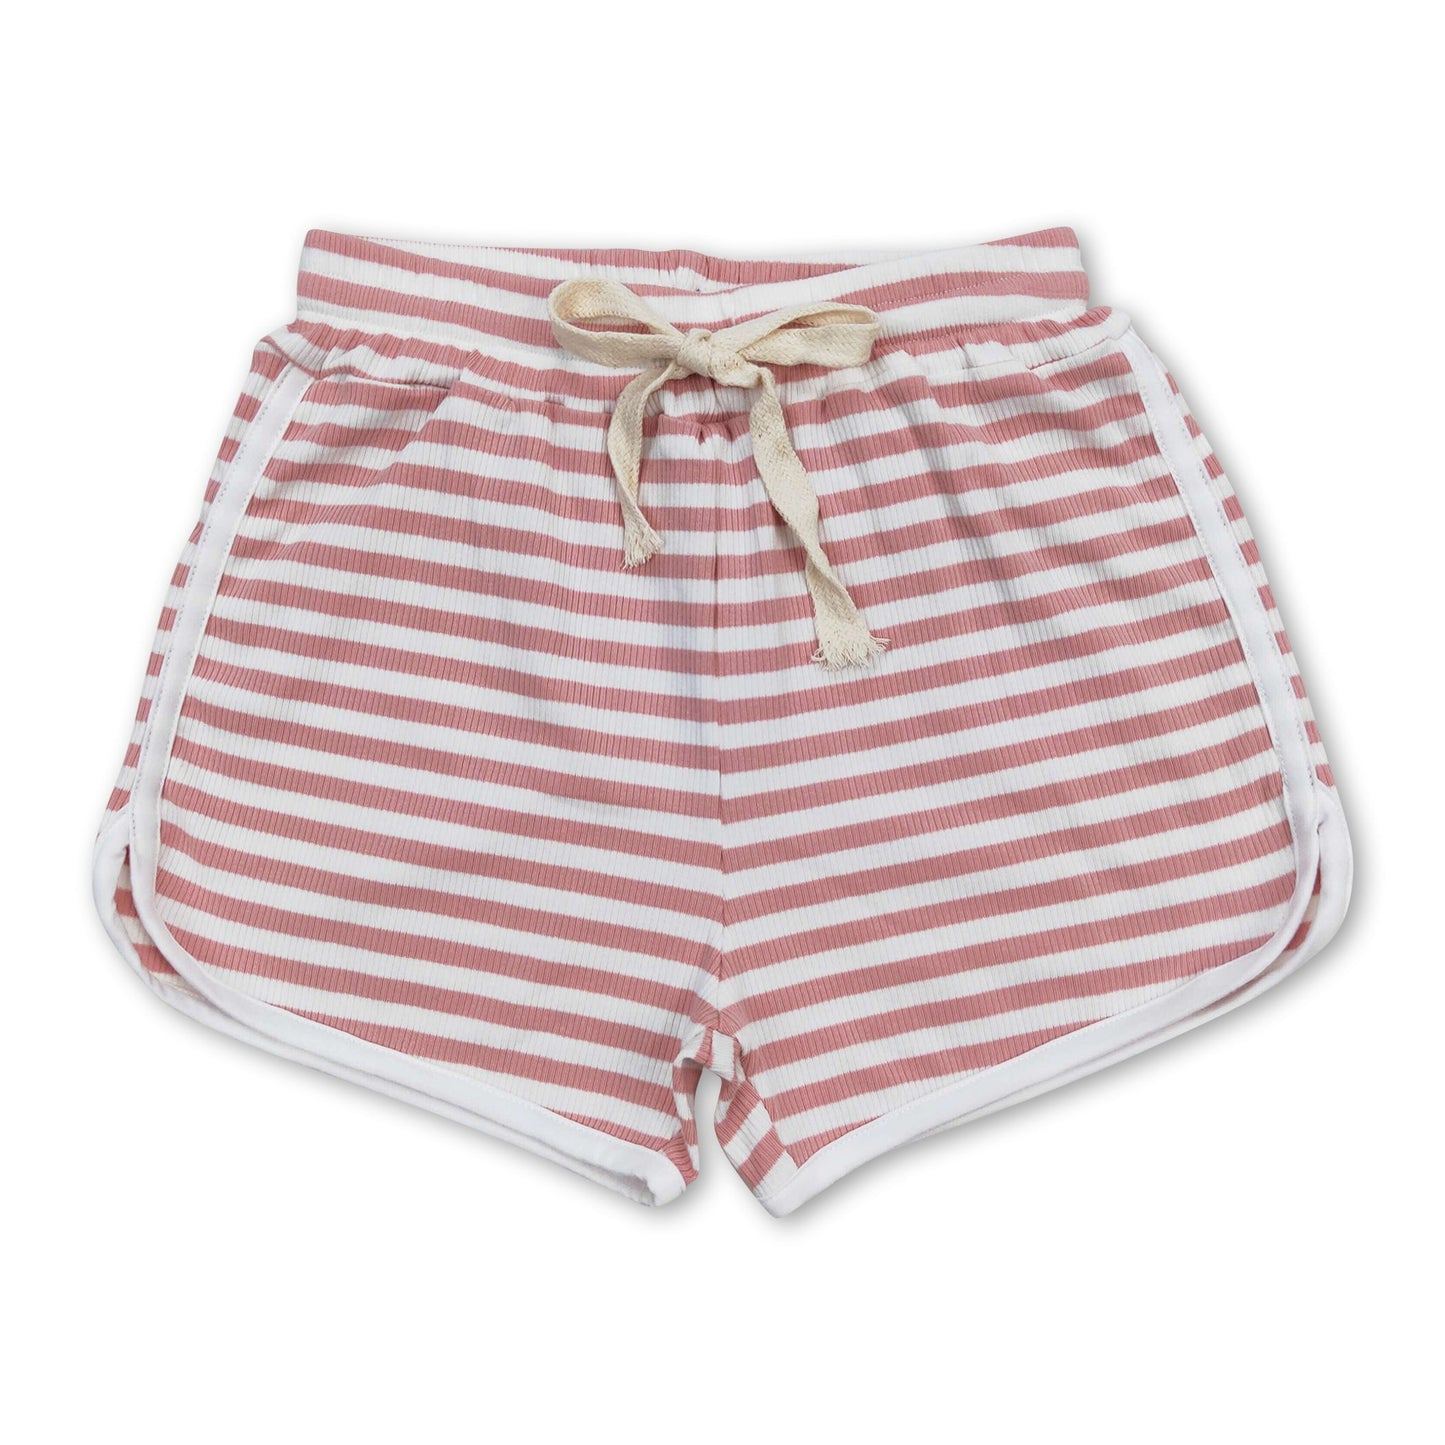 Pink stripe cotton toddler girls summer shorts